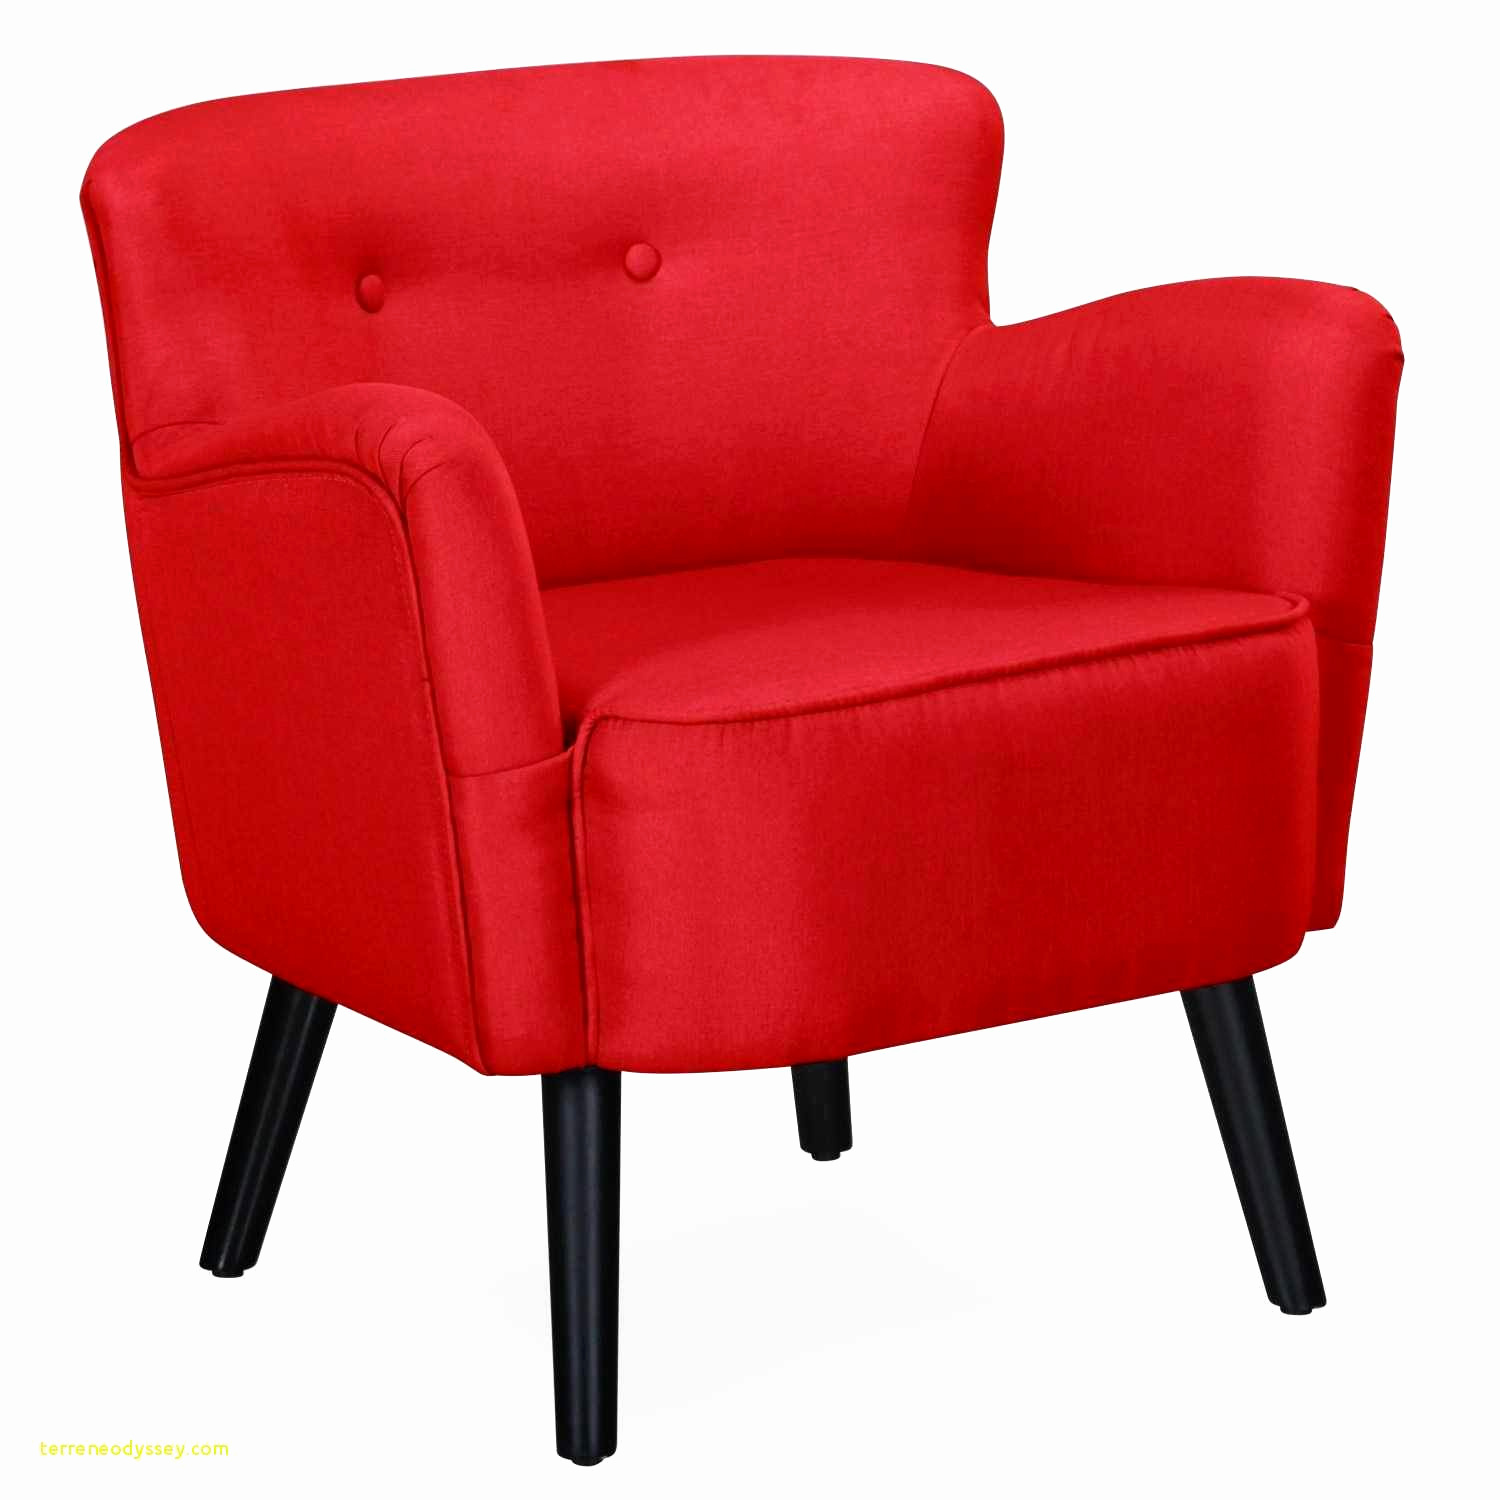 chaise de sol impressionnant chaise design cuir chaise grise pas cher elegant fauteuil salon 0d of chaise de sol